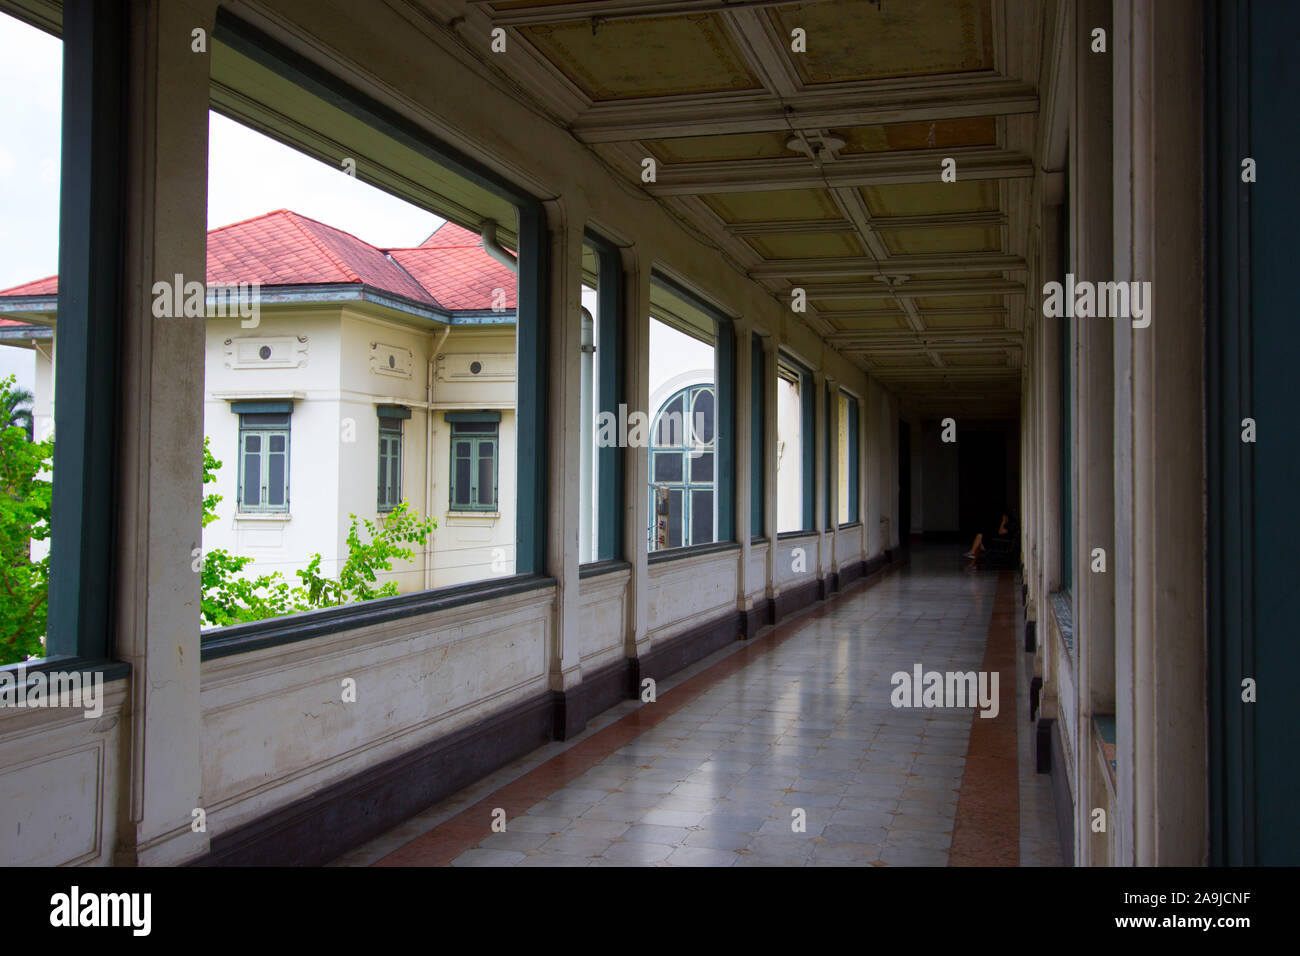 Upstairs airy hallway area at the Phayathai Palace in Bangkok, Thailand. Stock Photo